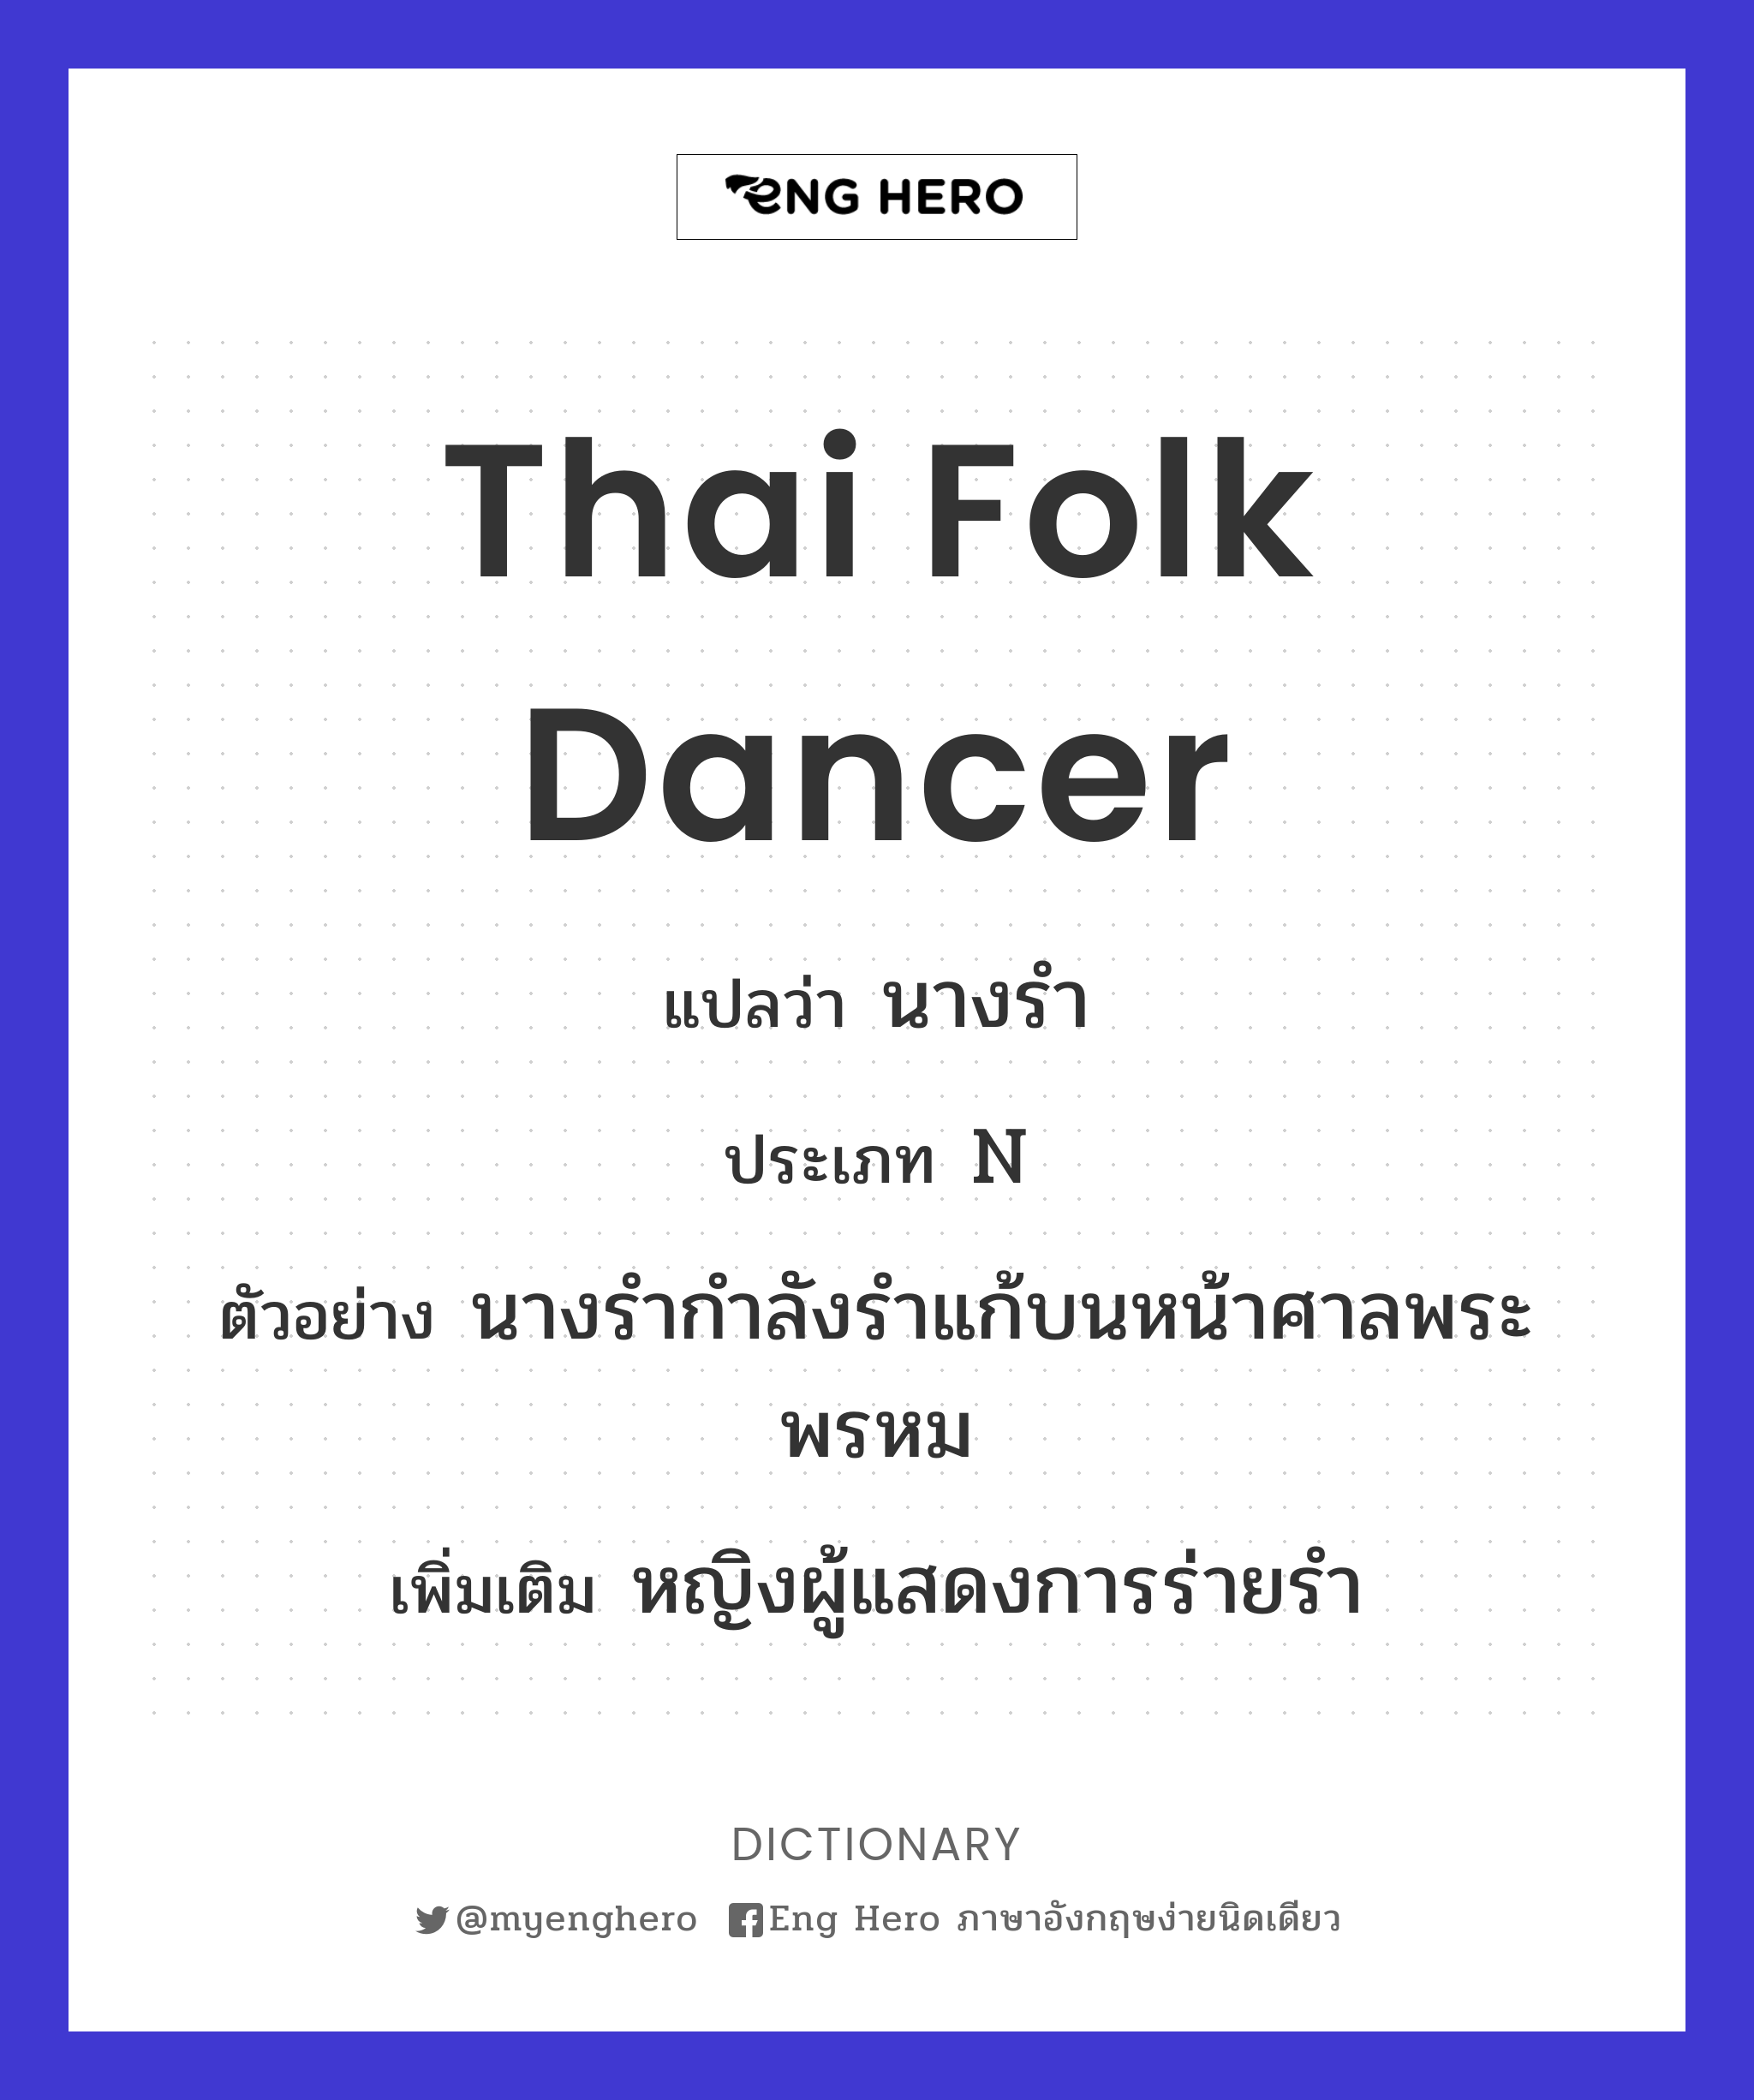 Thai folk dancer